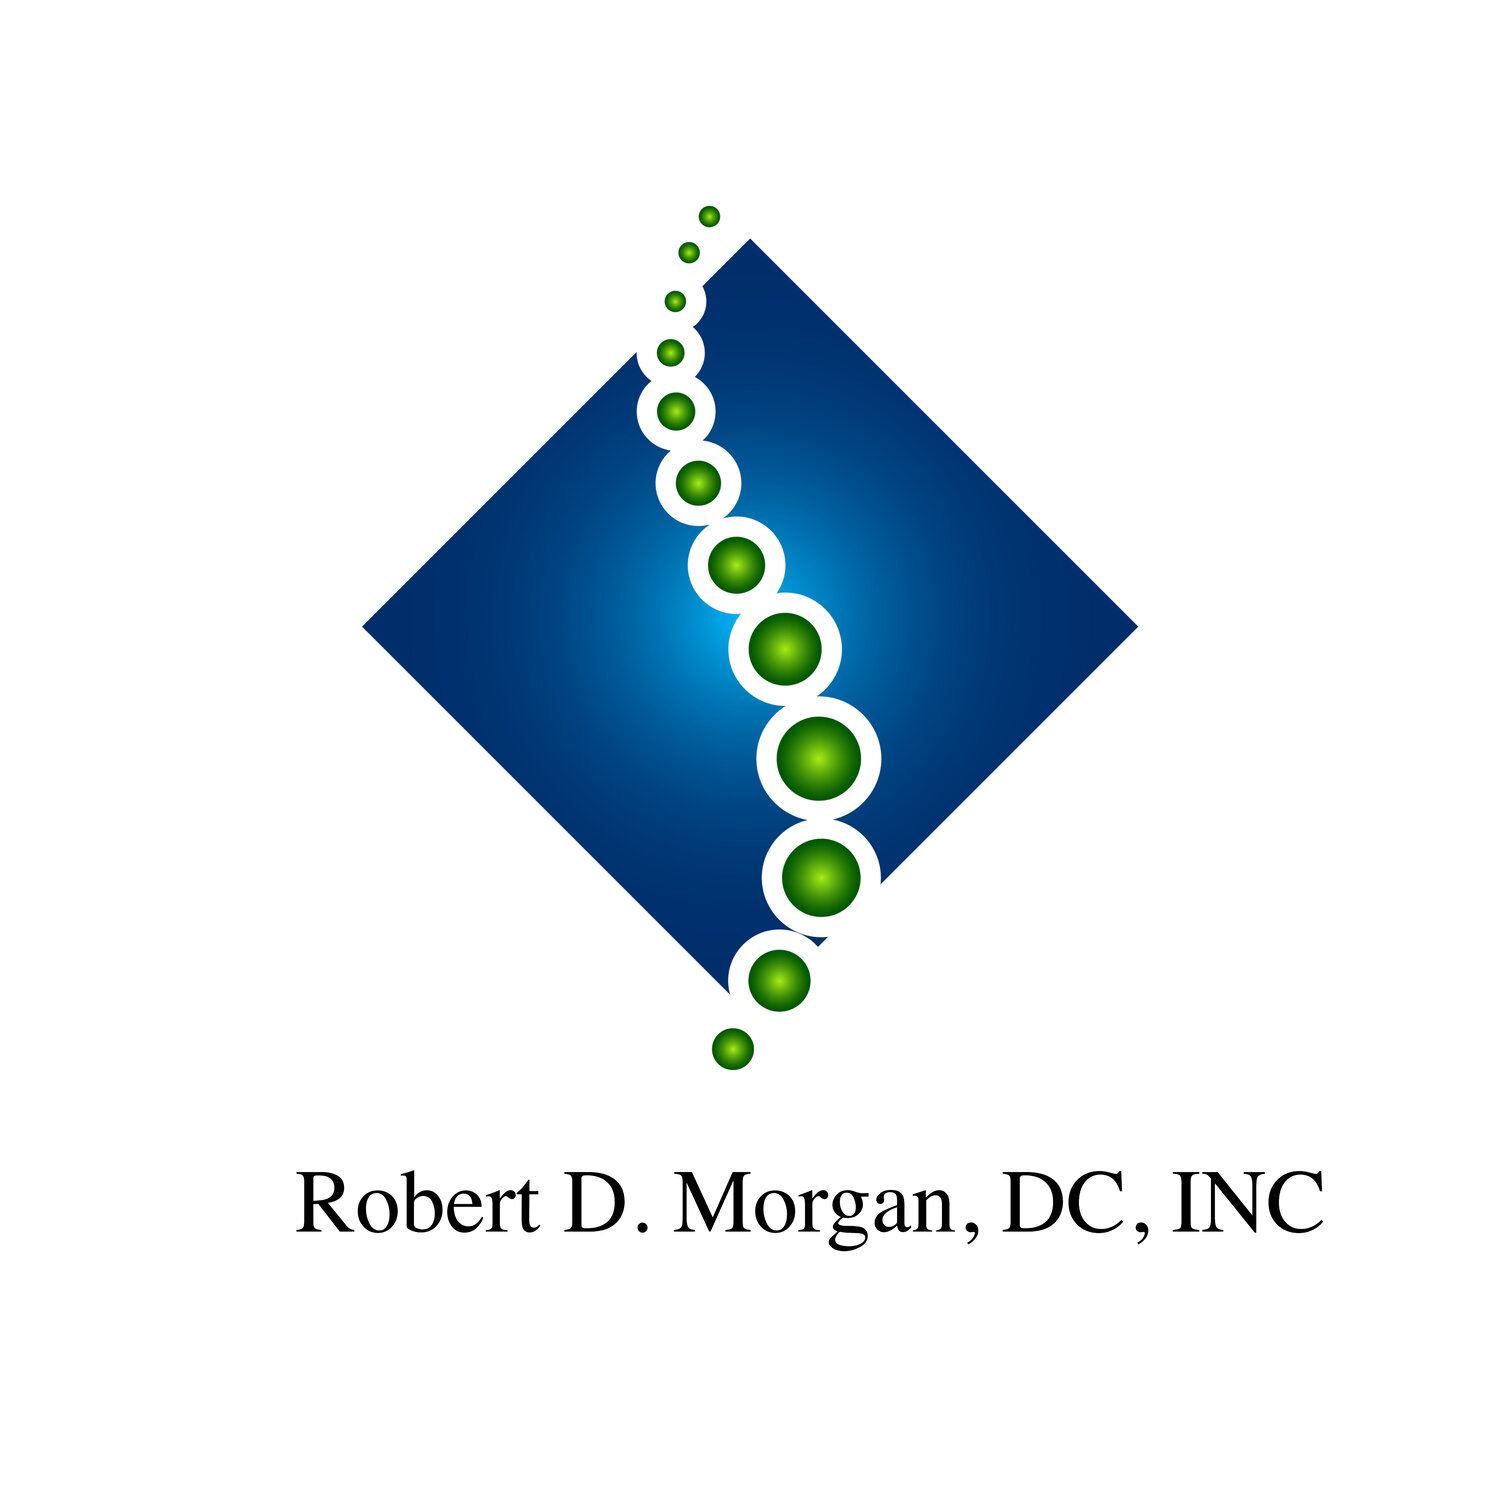 Robert D. Morgan, DC, INC.